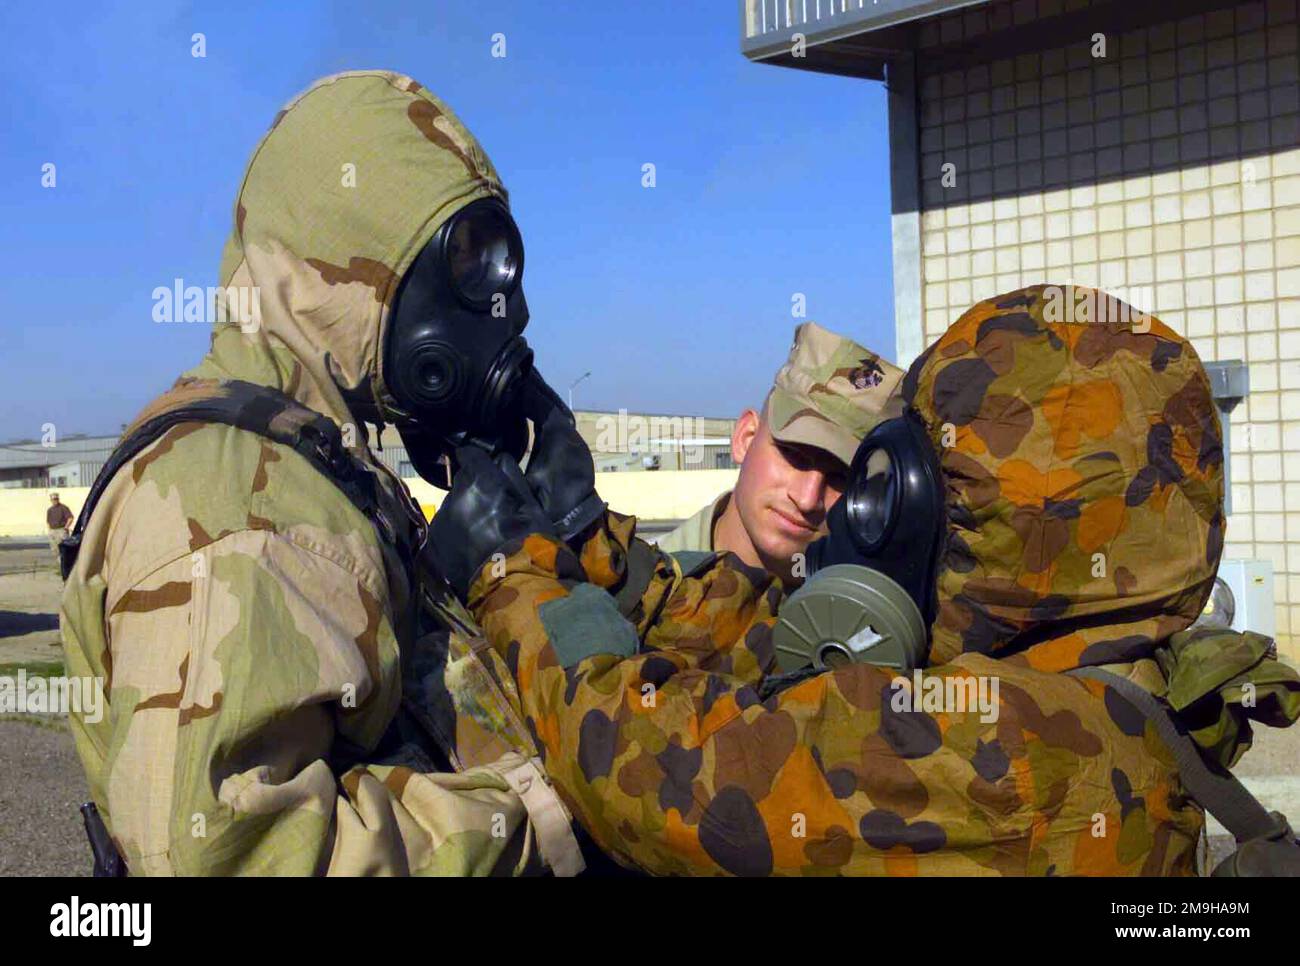 Il sergente Robert T. Mawson osserva come Marine con la Combined Joint Task Force (CJTF), nel suo Joint Service Lightweight Integrated Suit Technology (JSLIST), indossando una maschera da campo chimico-biologico M40 con un filtro C2A1, ottiene assistenza mettendo via il suo tubo da bere da un membro di servizio australiano. L'australiano indossa la tuta MKIV No1 NBC (Nuclear Biological Chemical) con la maschera Avon FM12. Entrambi si stanno allenando a Camp Doha, in Kuwait, durante LE OPERAZIONI CHE DURANO LA LIBERTÀ. Subject Operation/Series: ENDURING FREEDOM base: Camp Doha Paese: Kuwait (KWT) Scene Major Command mostrato: CJTF Foto Stock